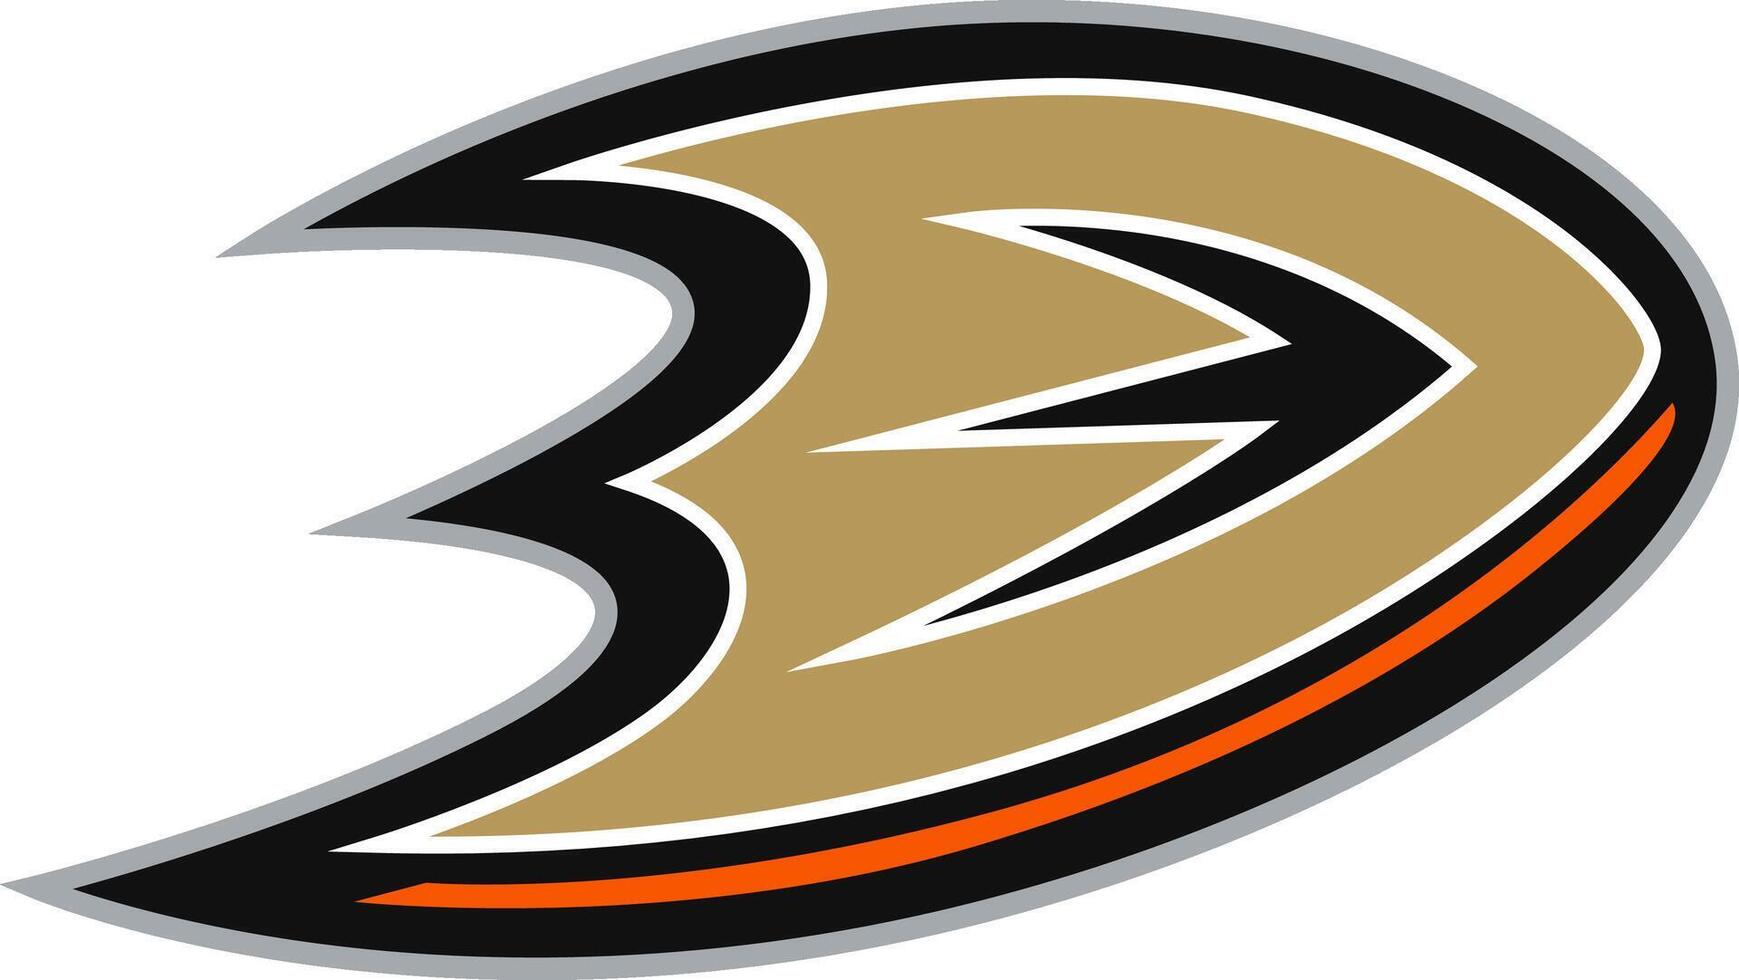 Logo of the Anaheim Ducks National Hockey League team vector